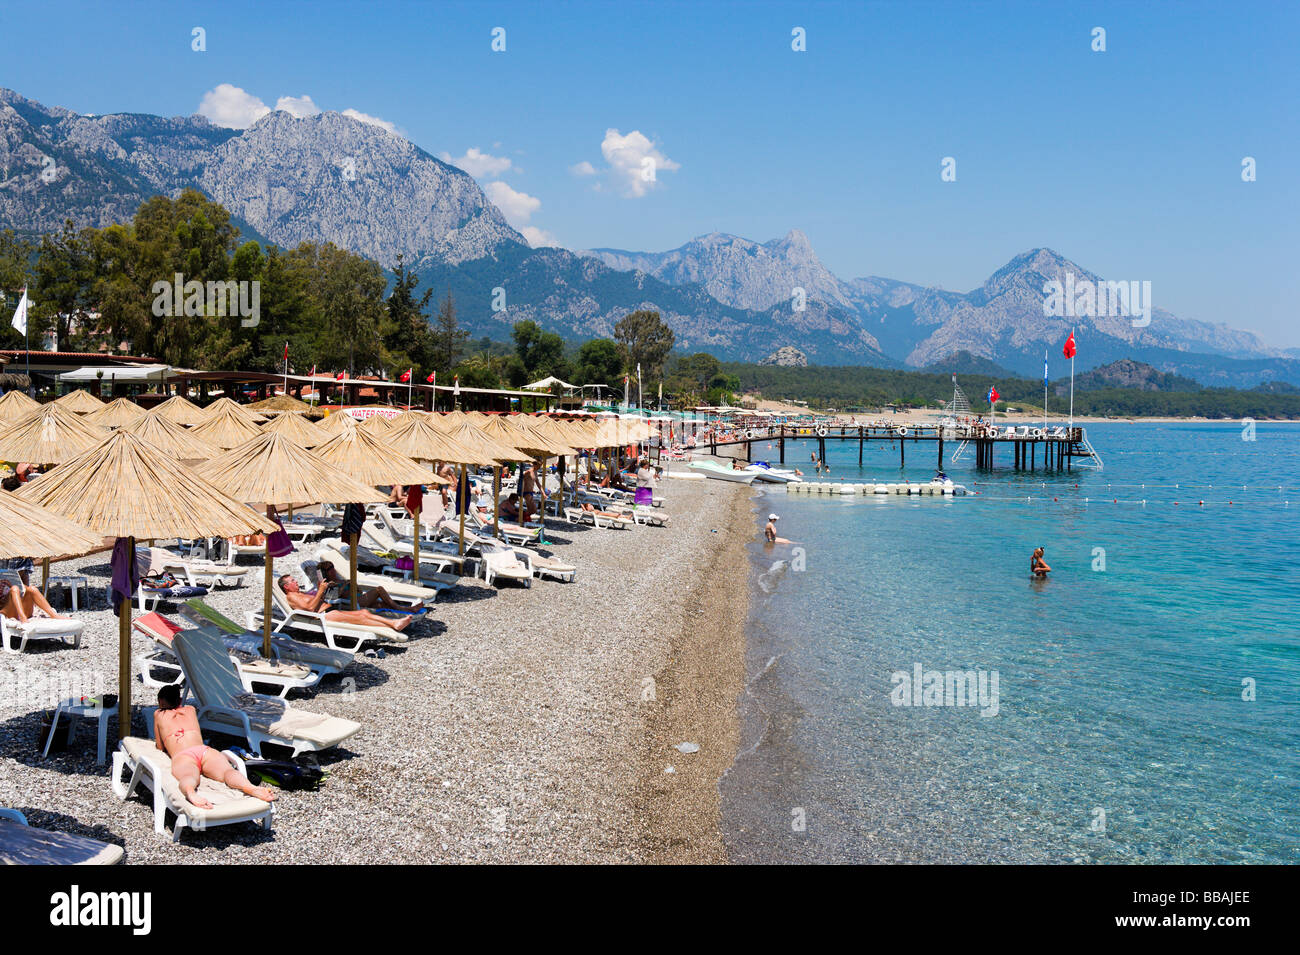 Spiaggia con le montagne del taurus dietro, Kemer, costa mediterranea, Turchia Foto Stock